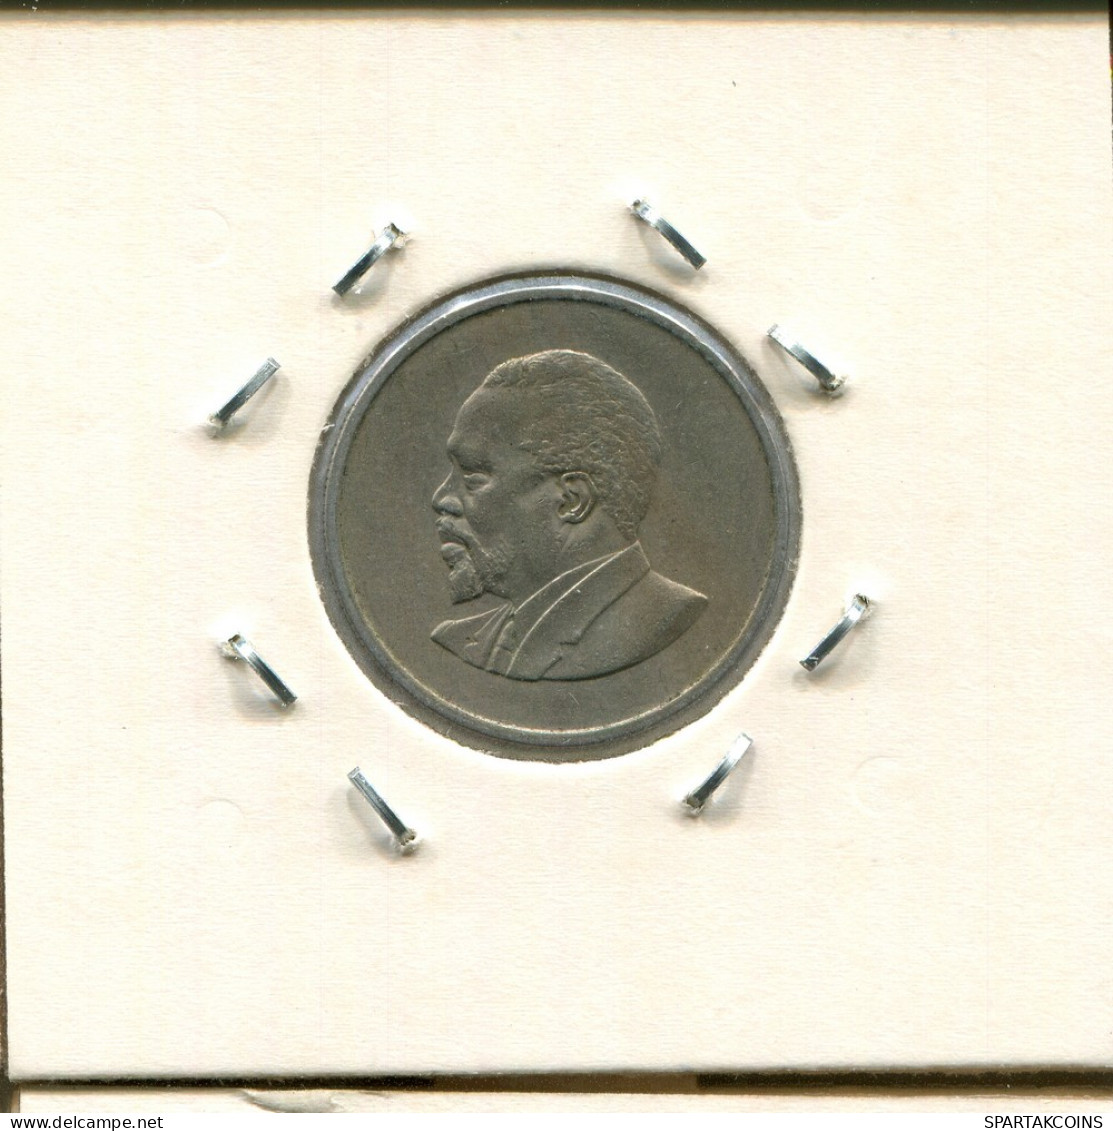 50 CENTS 1966 KENYA Coin #AS327.U - Kenya